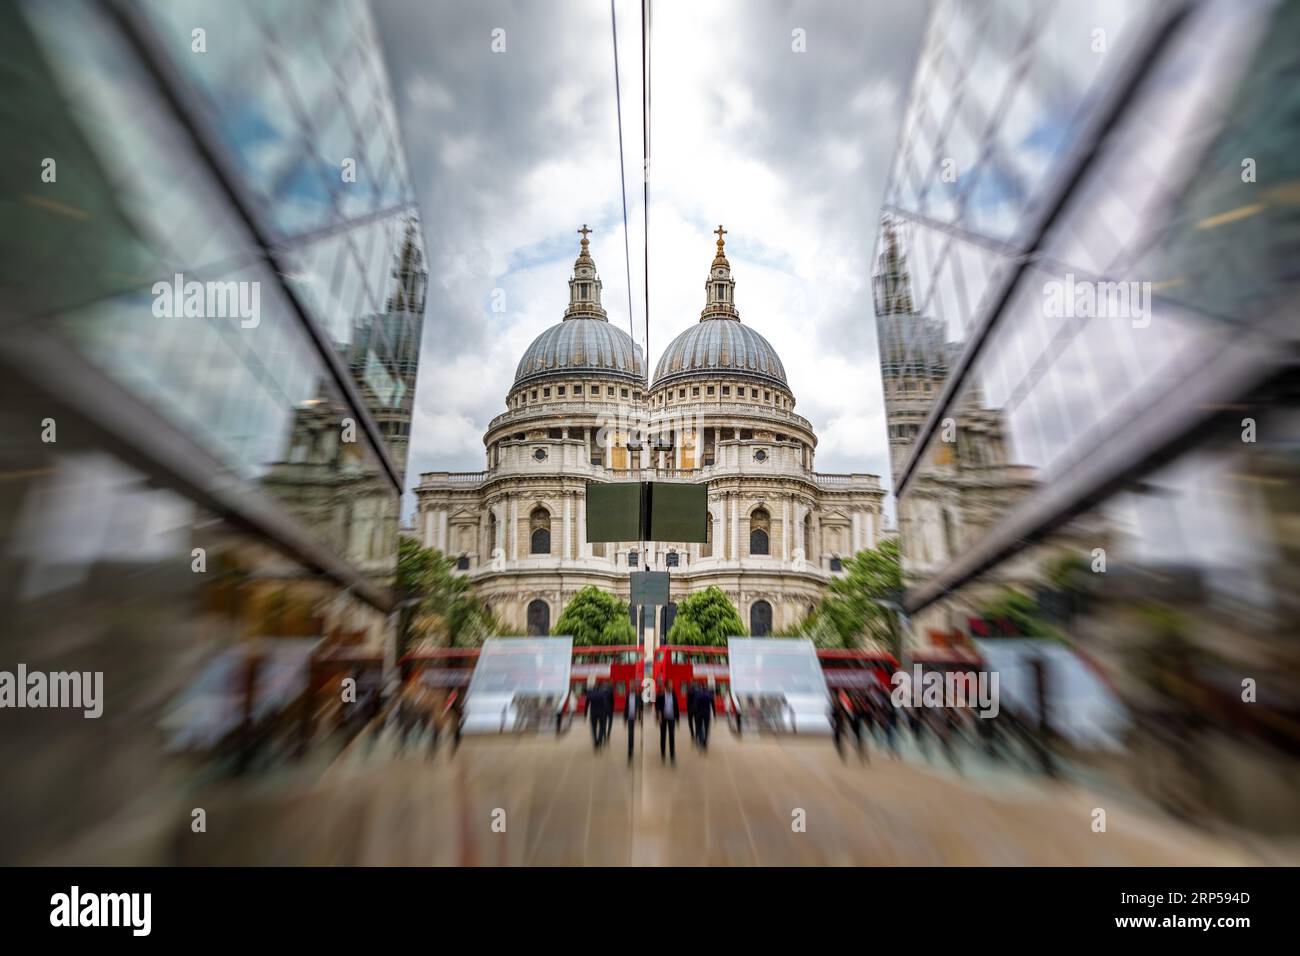 Cattedrale di St Paul riflessa in moderni edifici in vetro, con autobus rossi di Londra e gente che passeggia. Concentrati sulla cattedrale con sfocatura zoom. Foto Stock